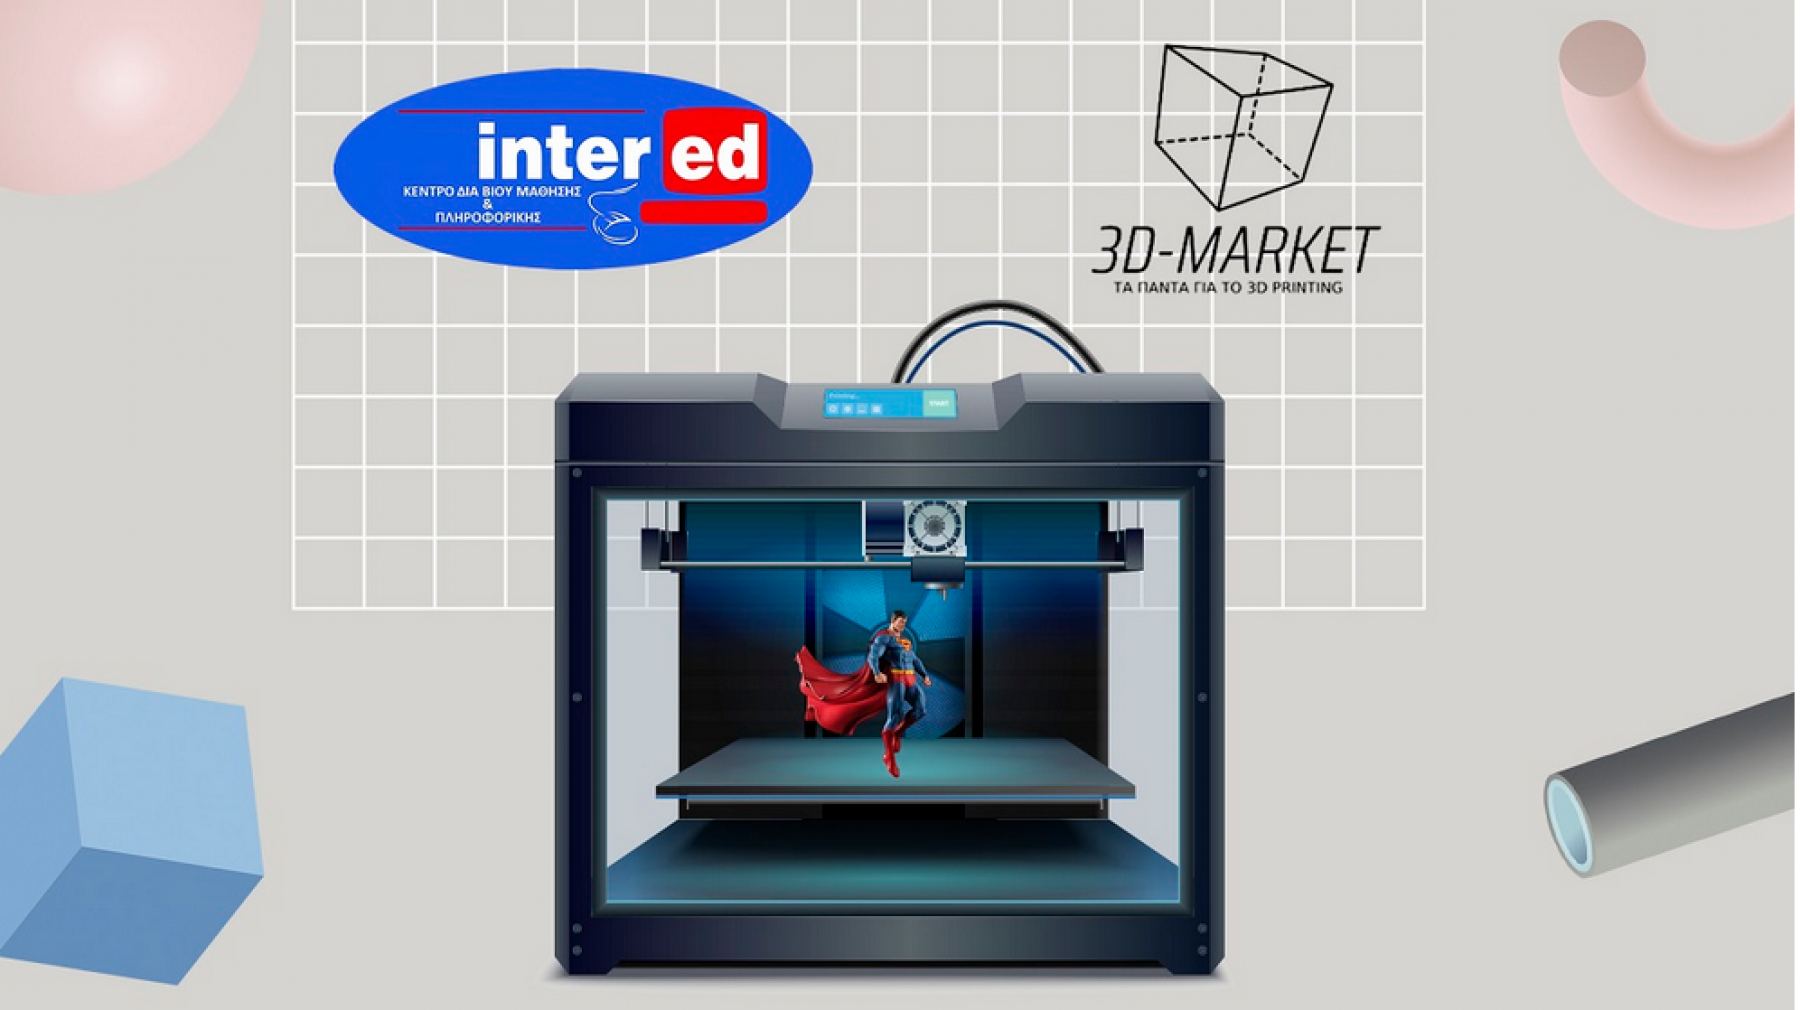 Λαμία: Σε ενδιαφέρει το 3D printing; - Μπορείς να μάθεις σε 10 ώρες!